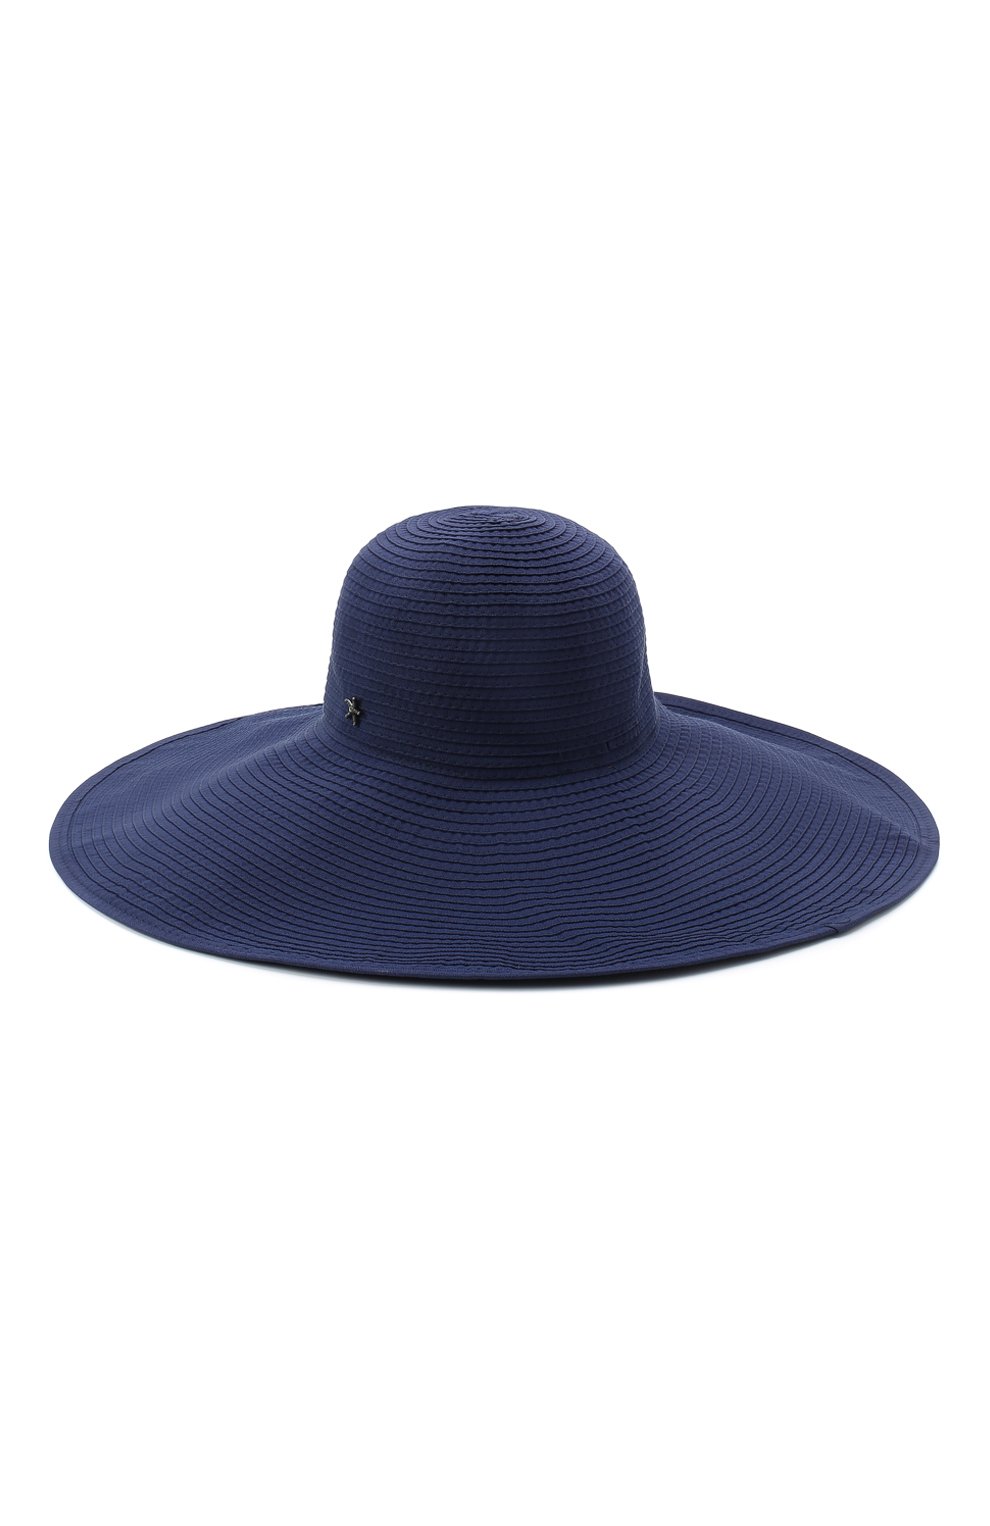 Женская шляпа с широкими полями SHAN синего цвета, арт. 0550-07 | Фото 1 (Материал: Текстиль, Синтетический материал)